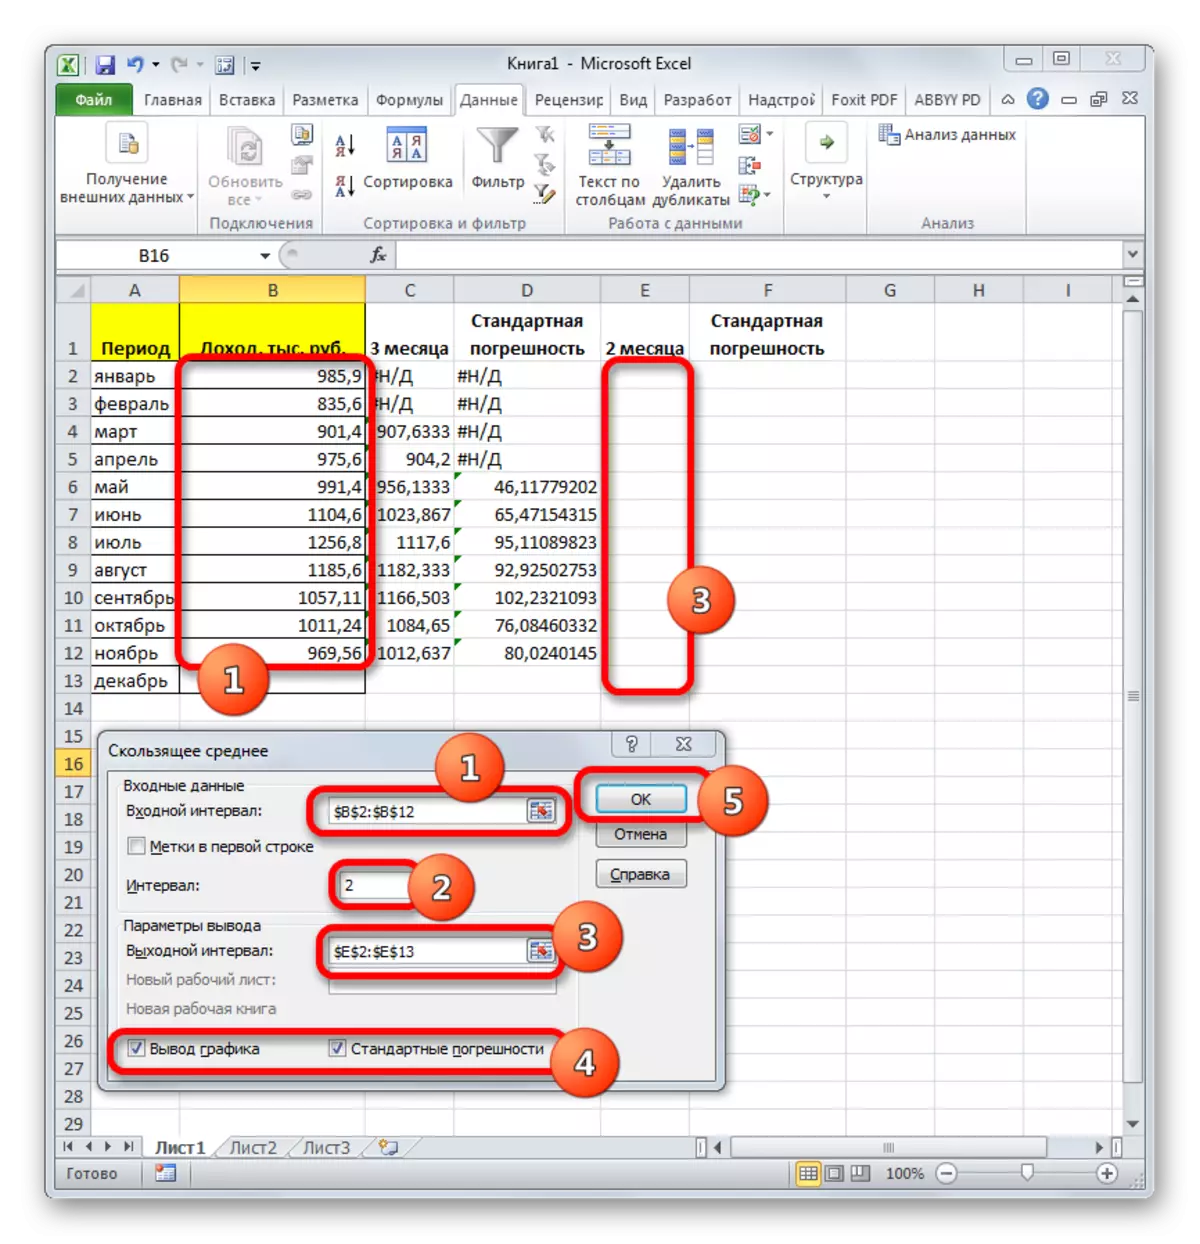 Analiza podatkov orodja, ki se giblje sredi Microsoft Excel